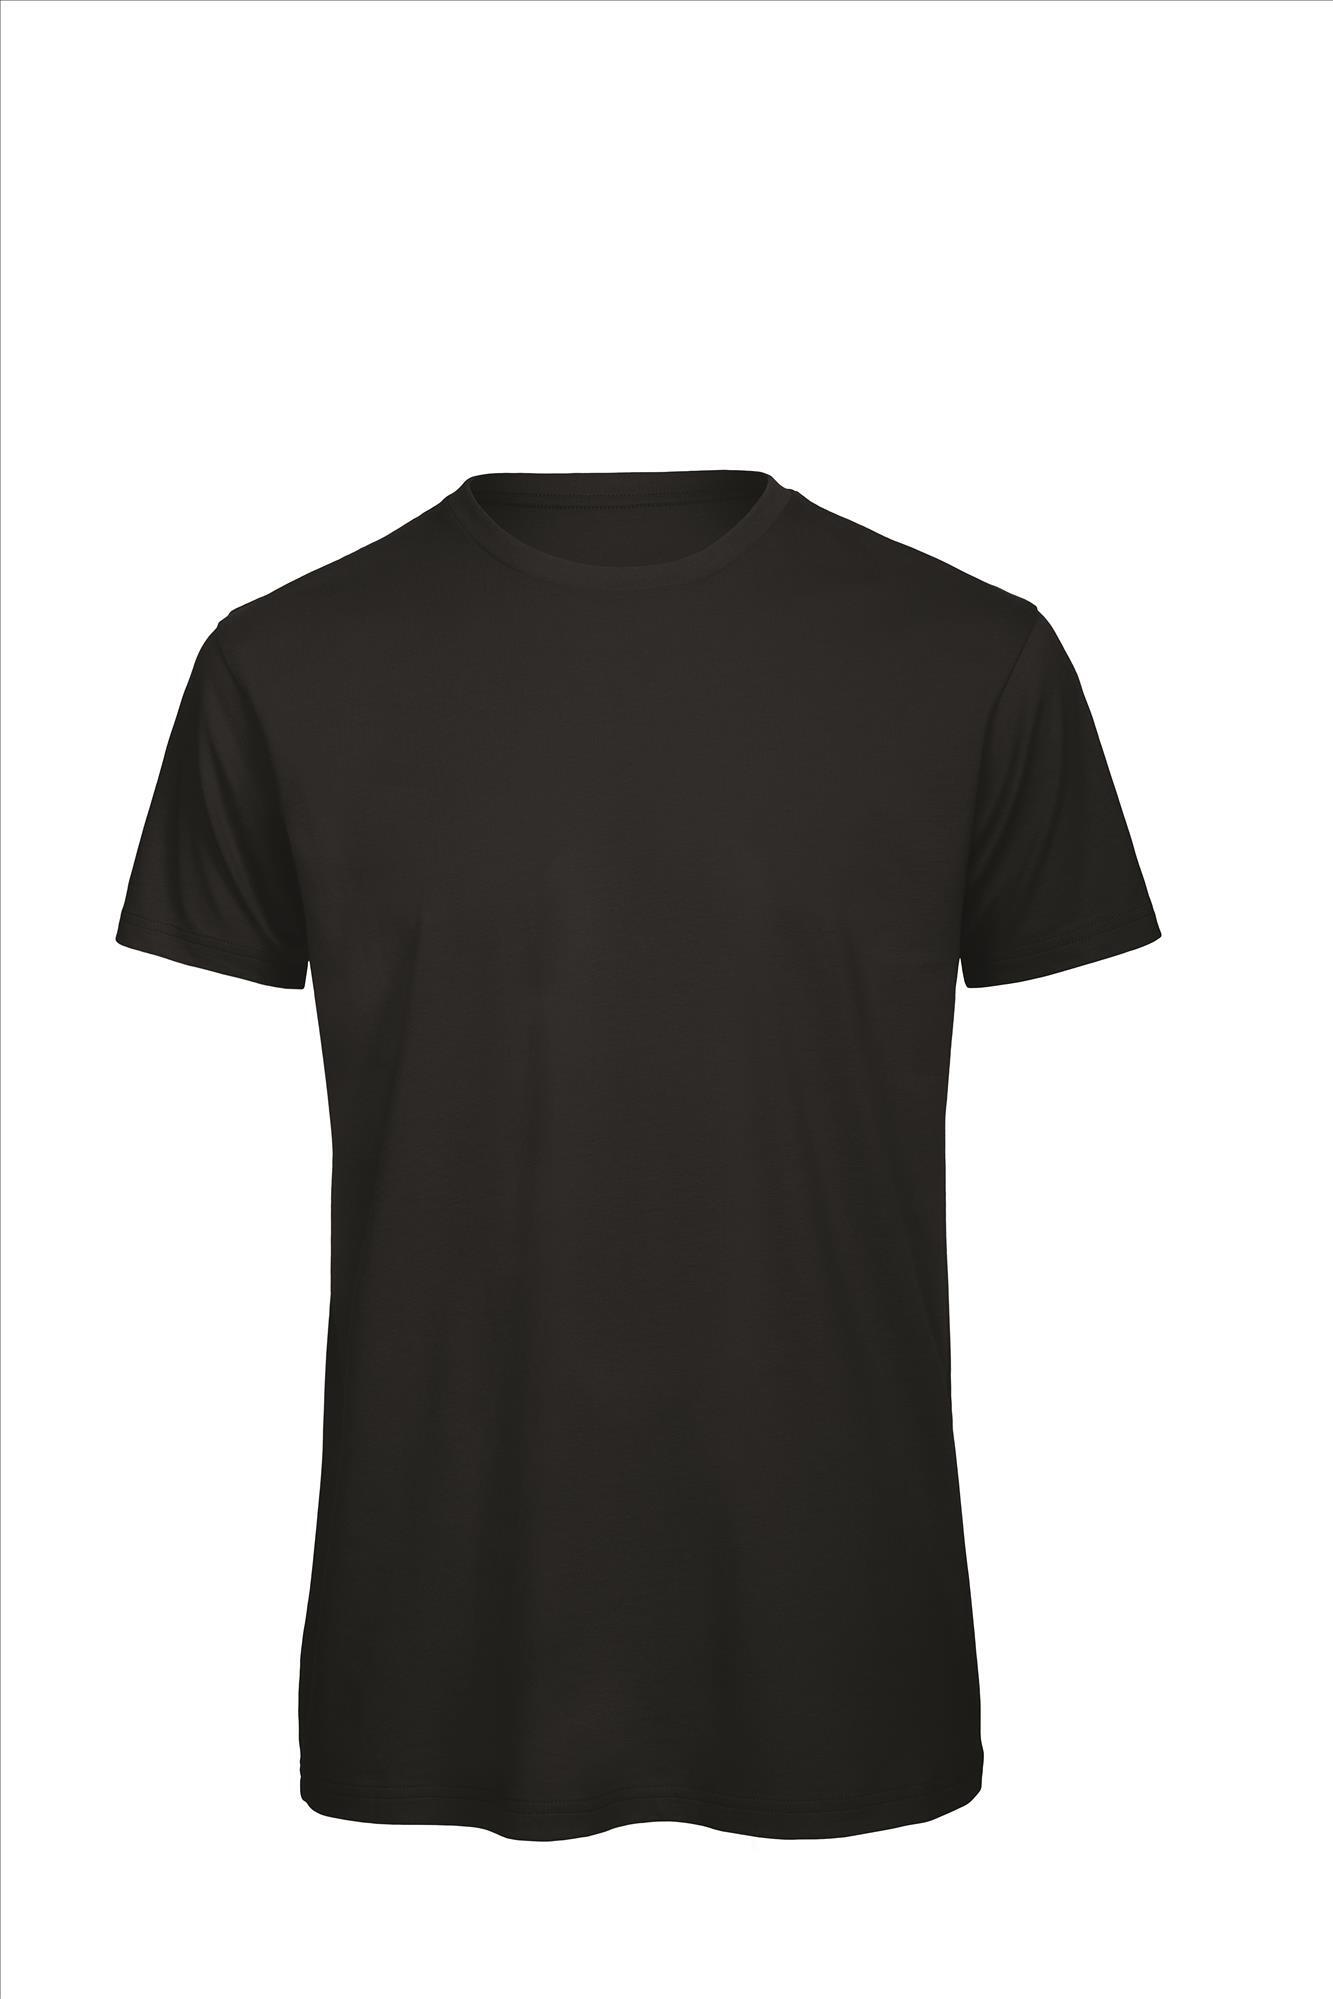 Heren T-shirt zwart te personaliseren bedrukbaar duurzaam shirt